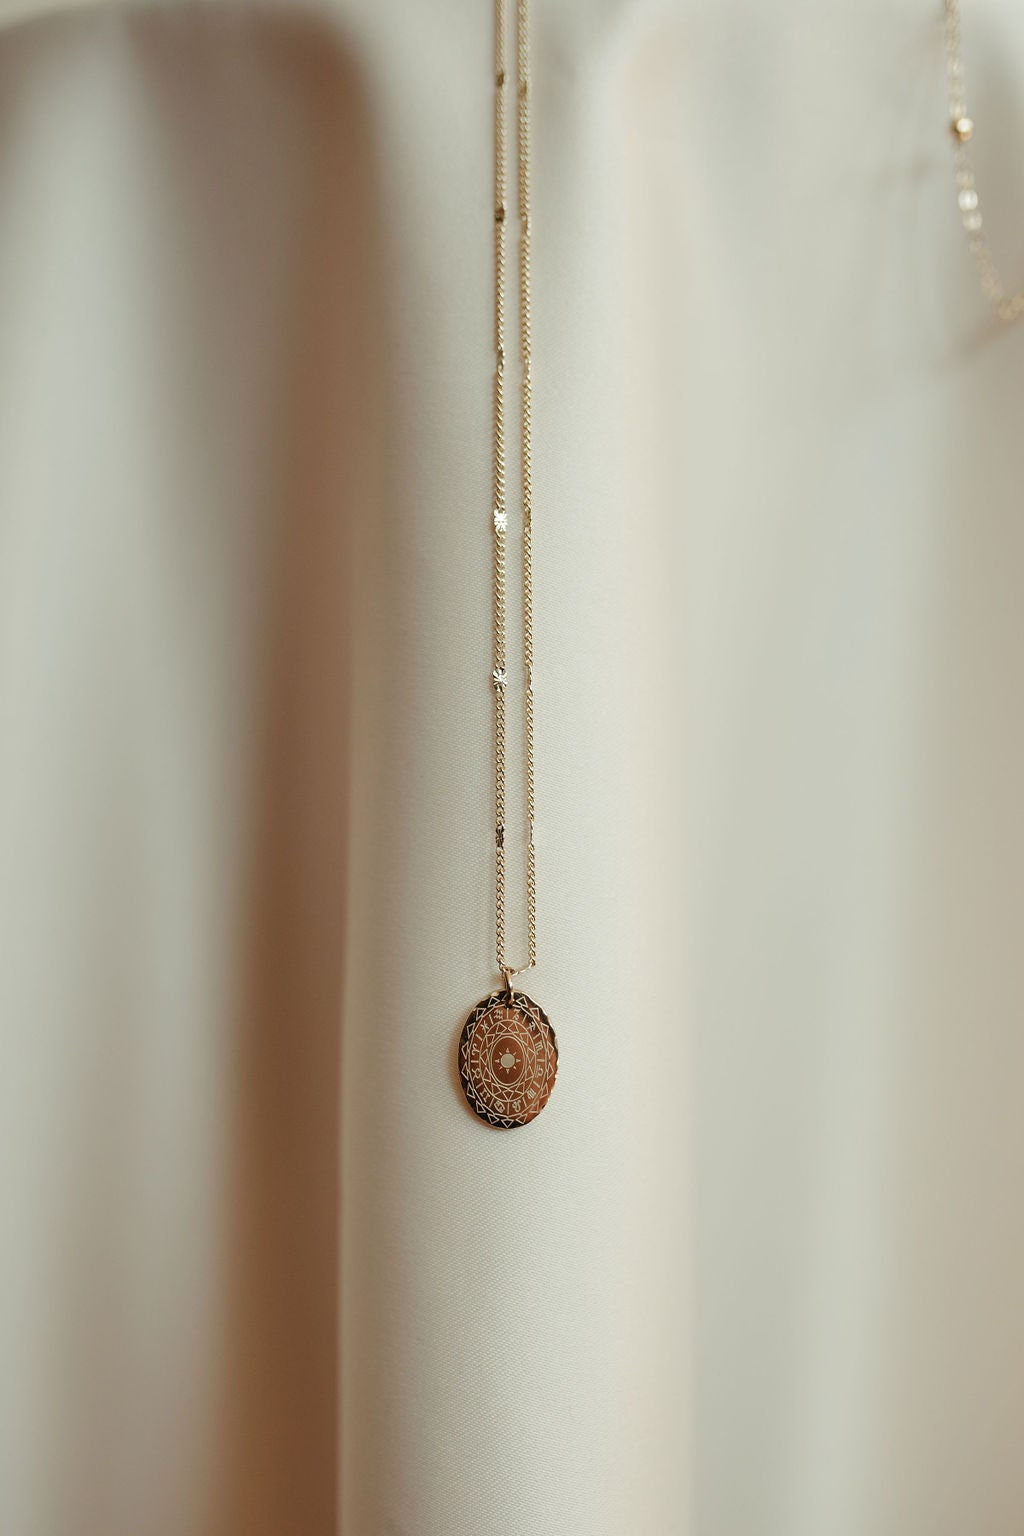 Star patterned oval necklace